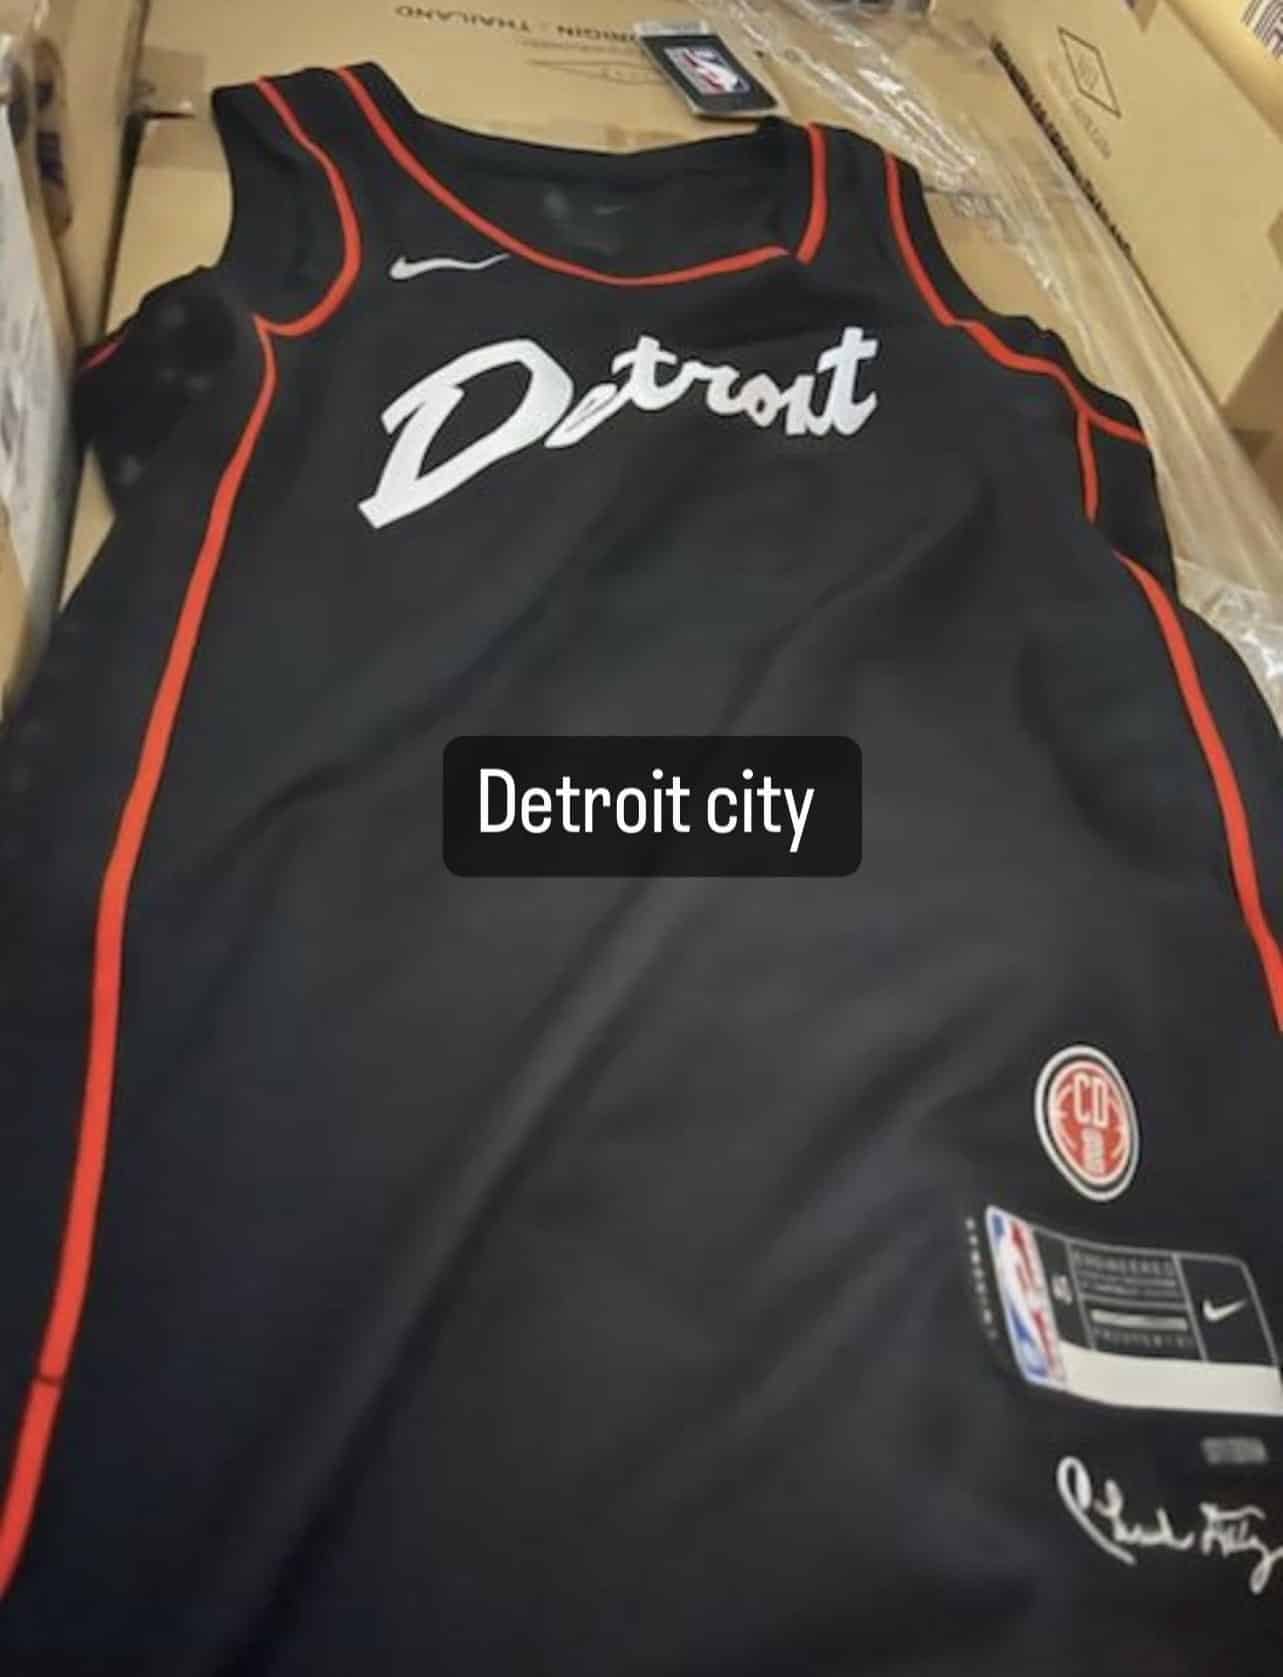 Detroit Pistons 'Bad Boys' inspired uniforms,Detroit Pistons